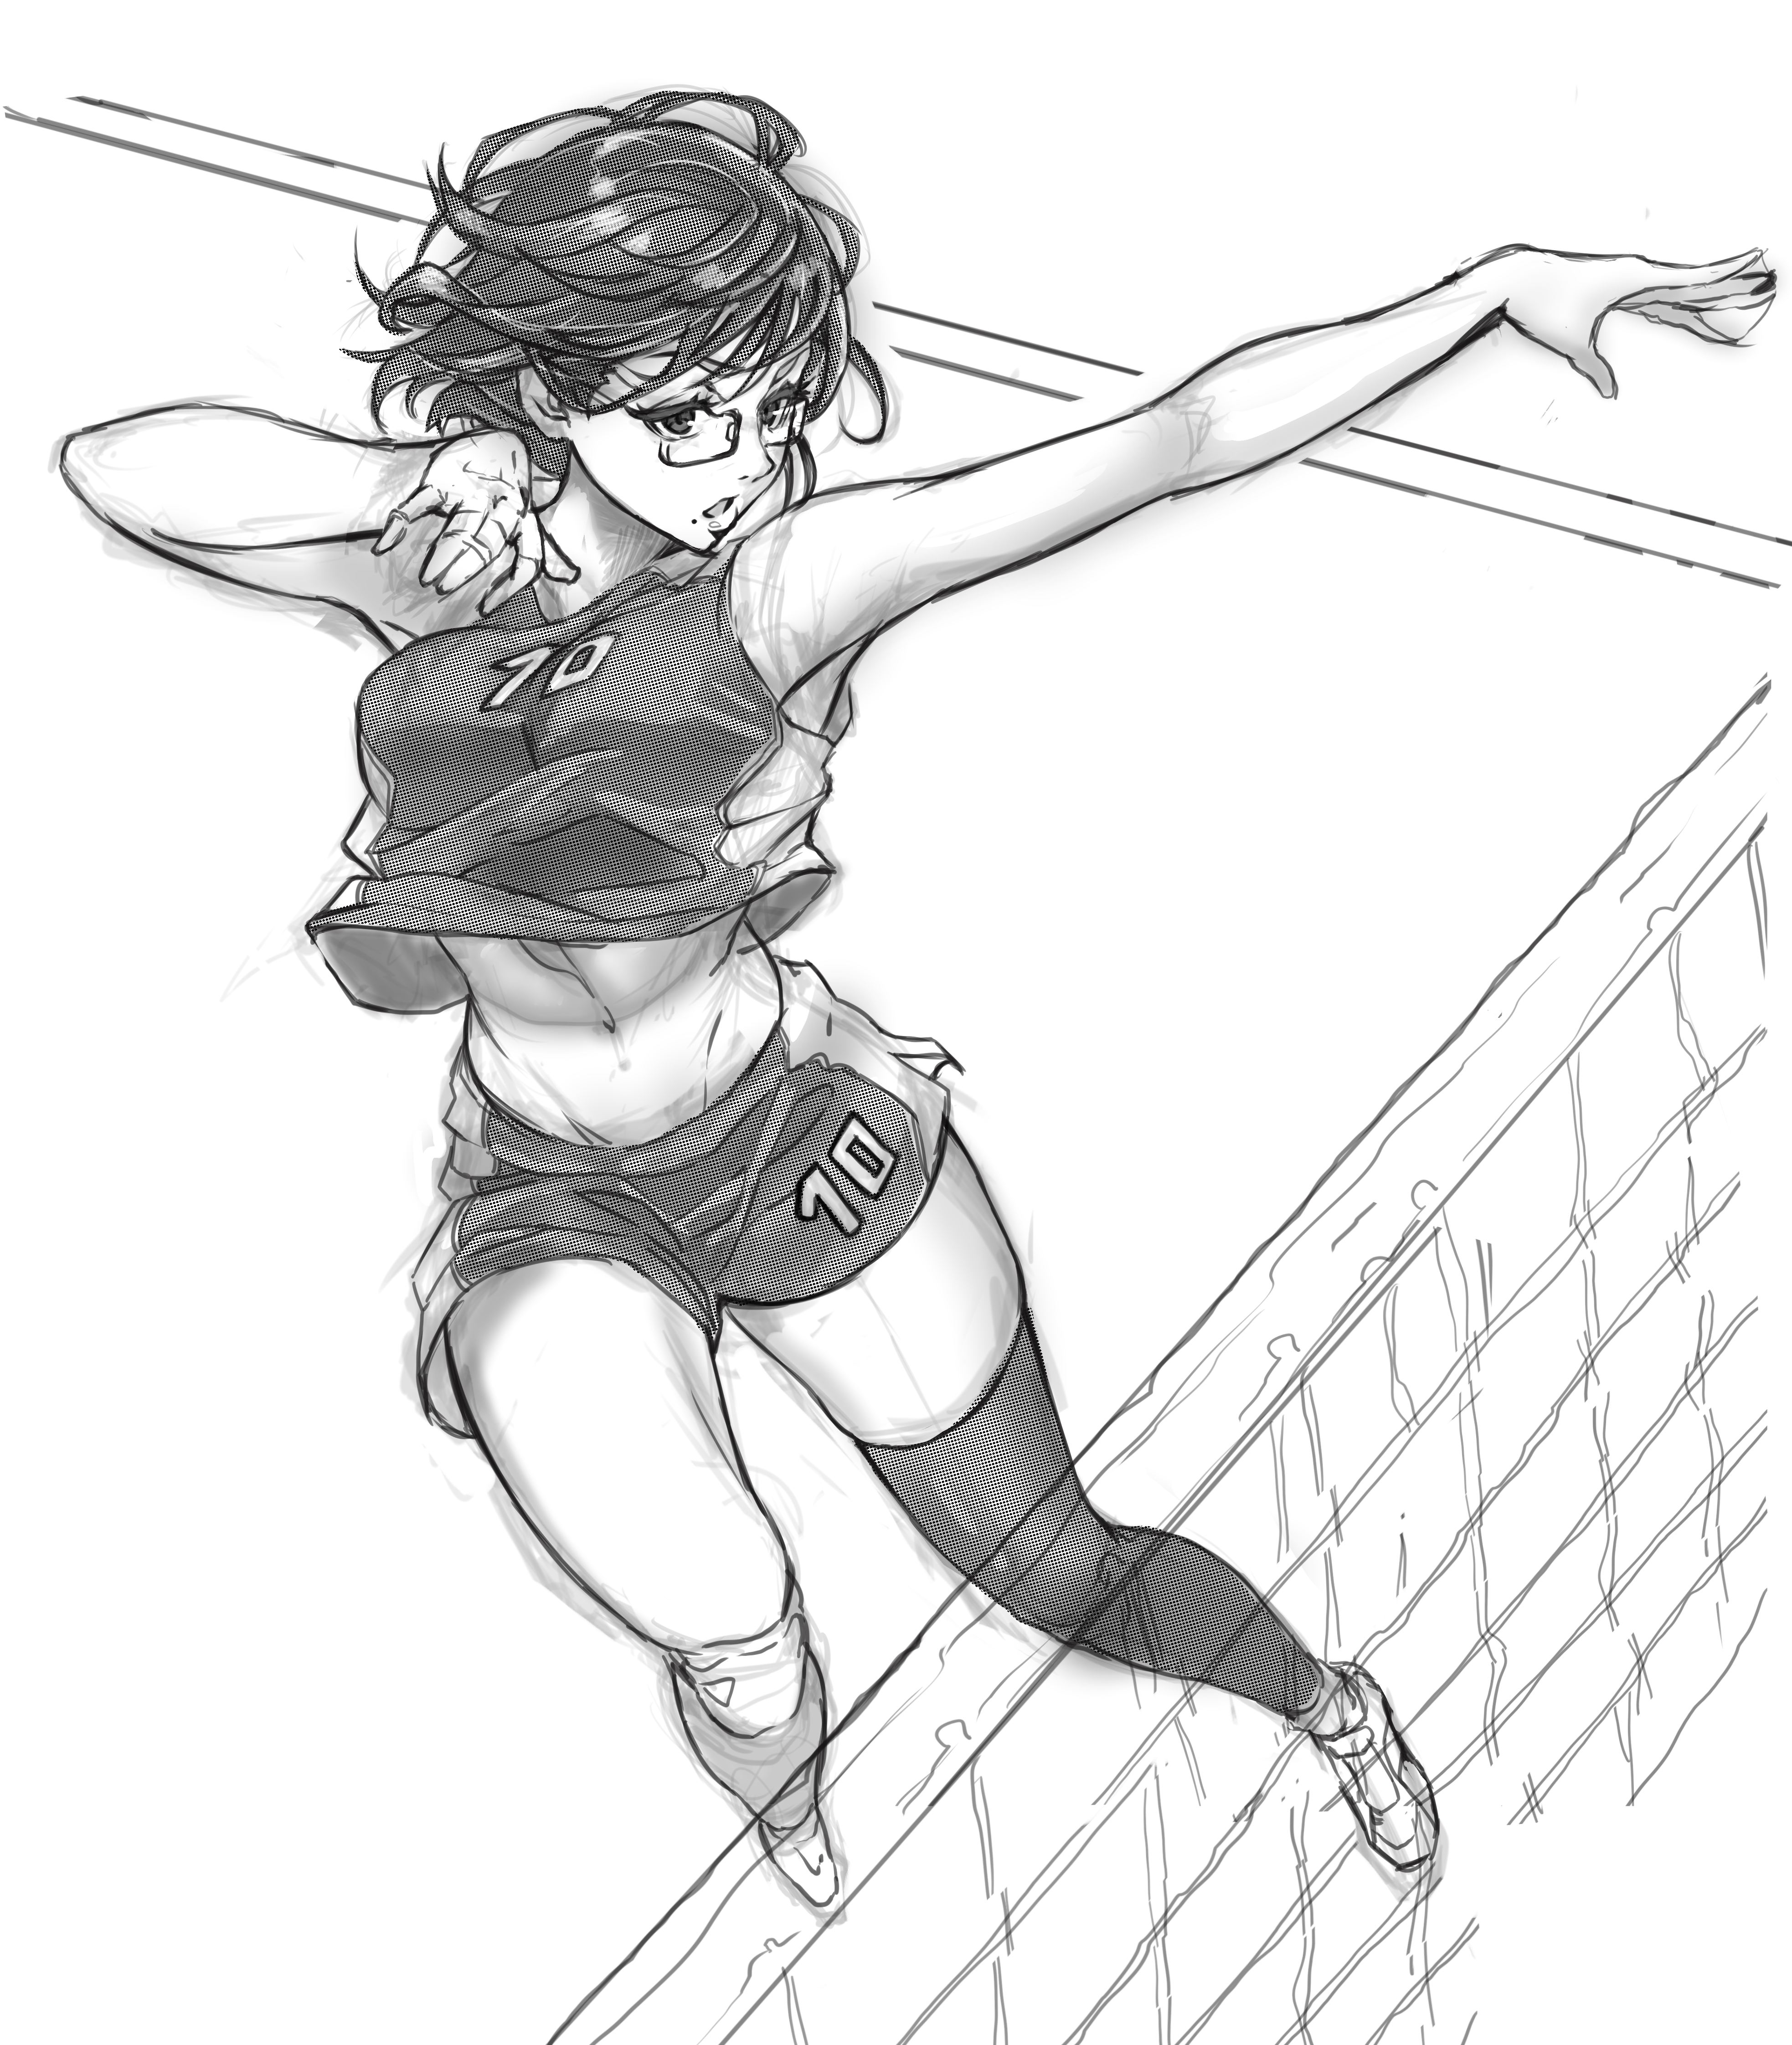 Shimizu kiyoko-排球少年清水潔子